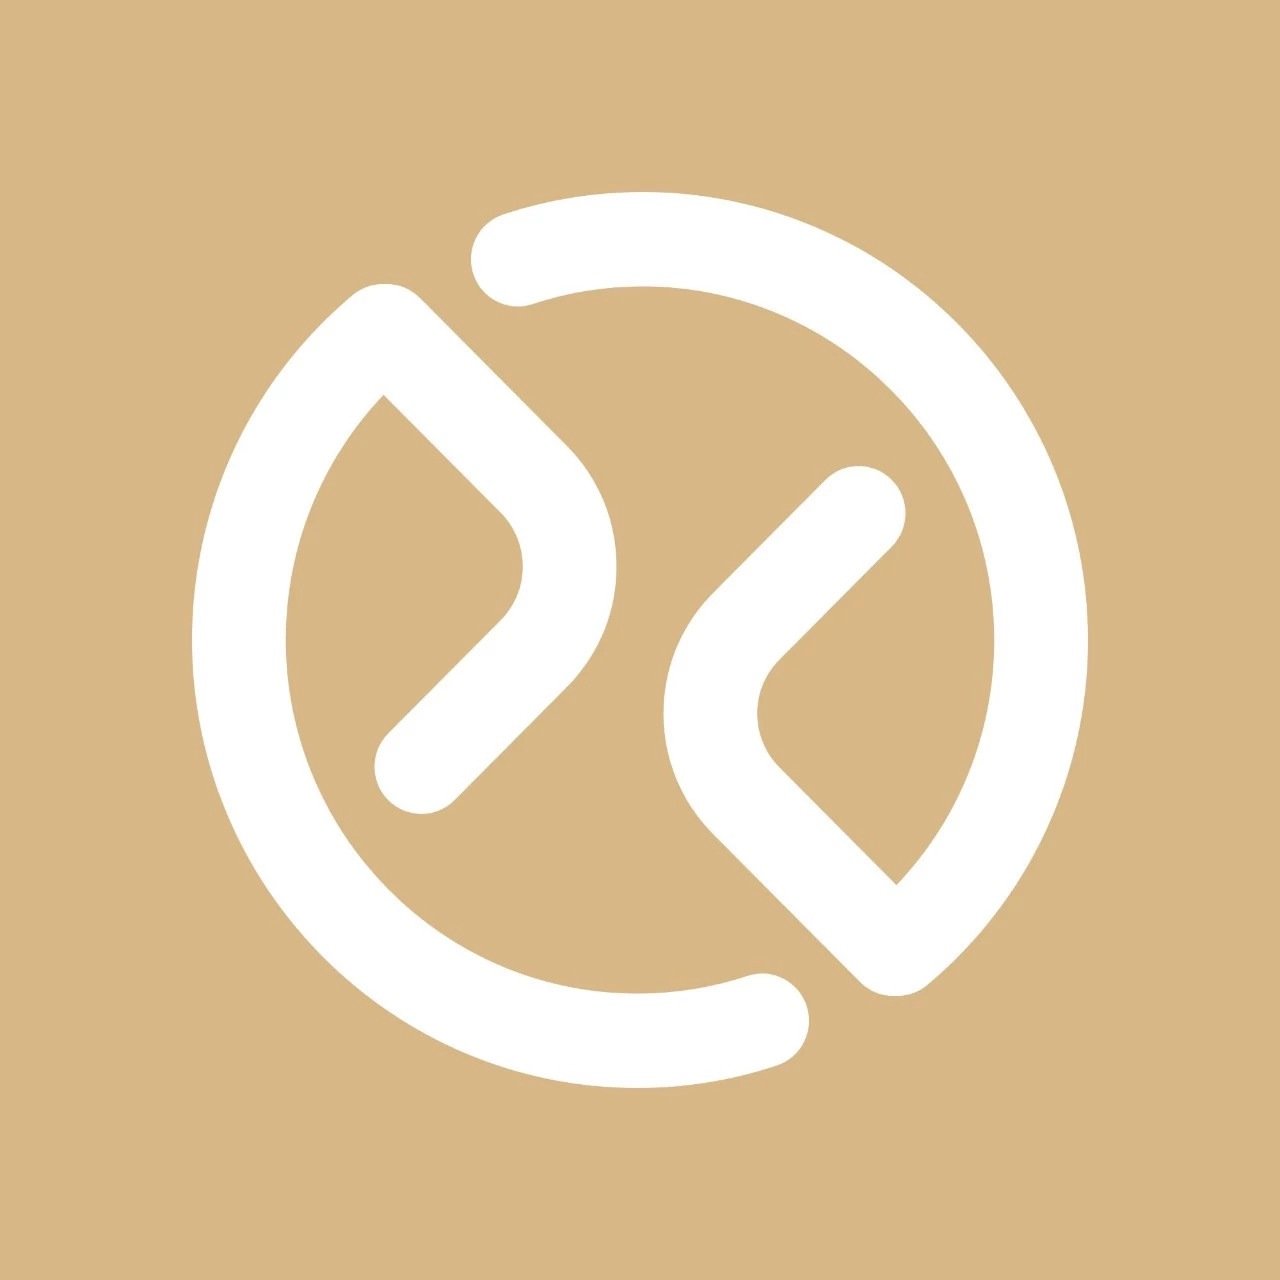 雪球网logo图片